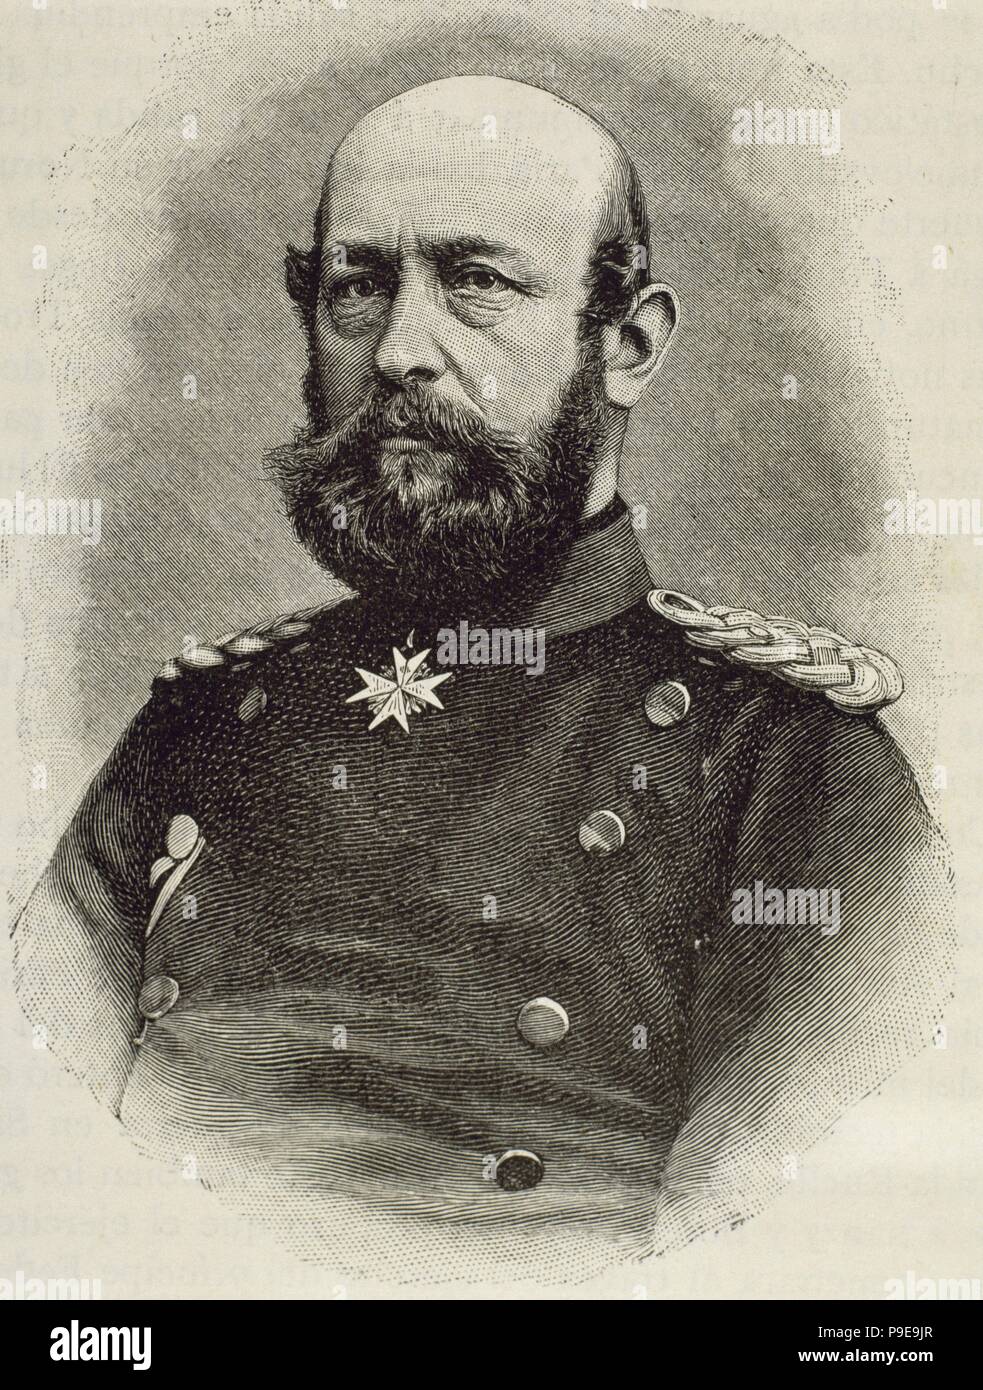 Federico Francisco II (1823-1883). Oficial de Prusia y Gran Duque de Mecklenburg-Schwerin (1842-1883). Retrato. Grabado. Foto de stock